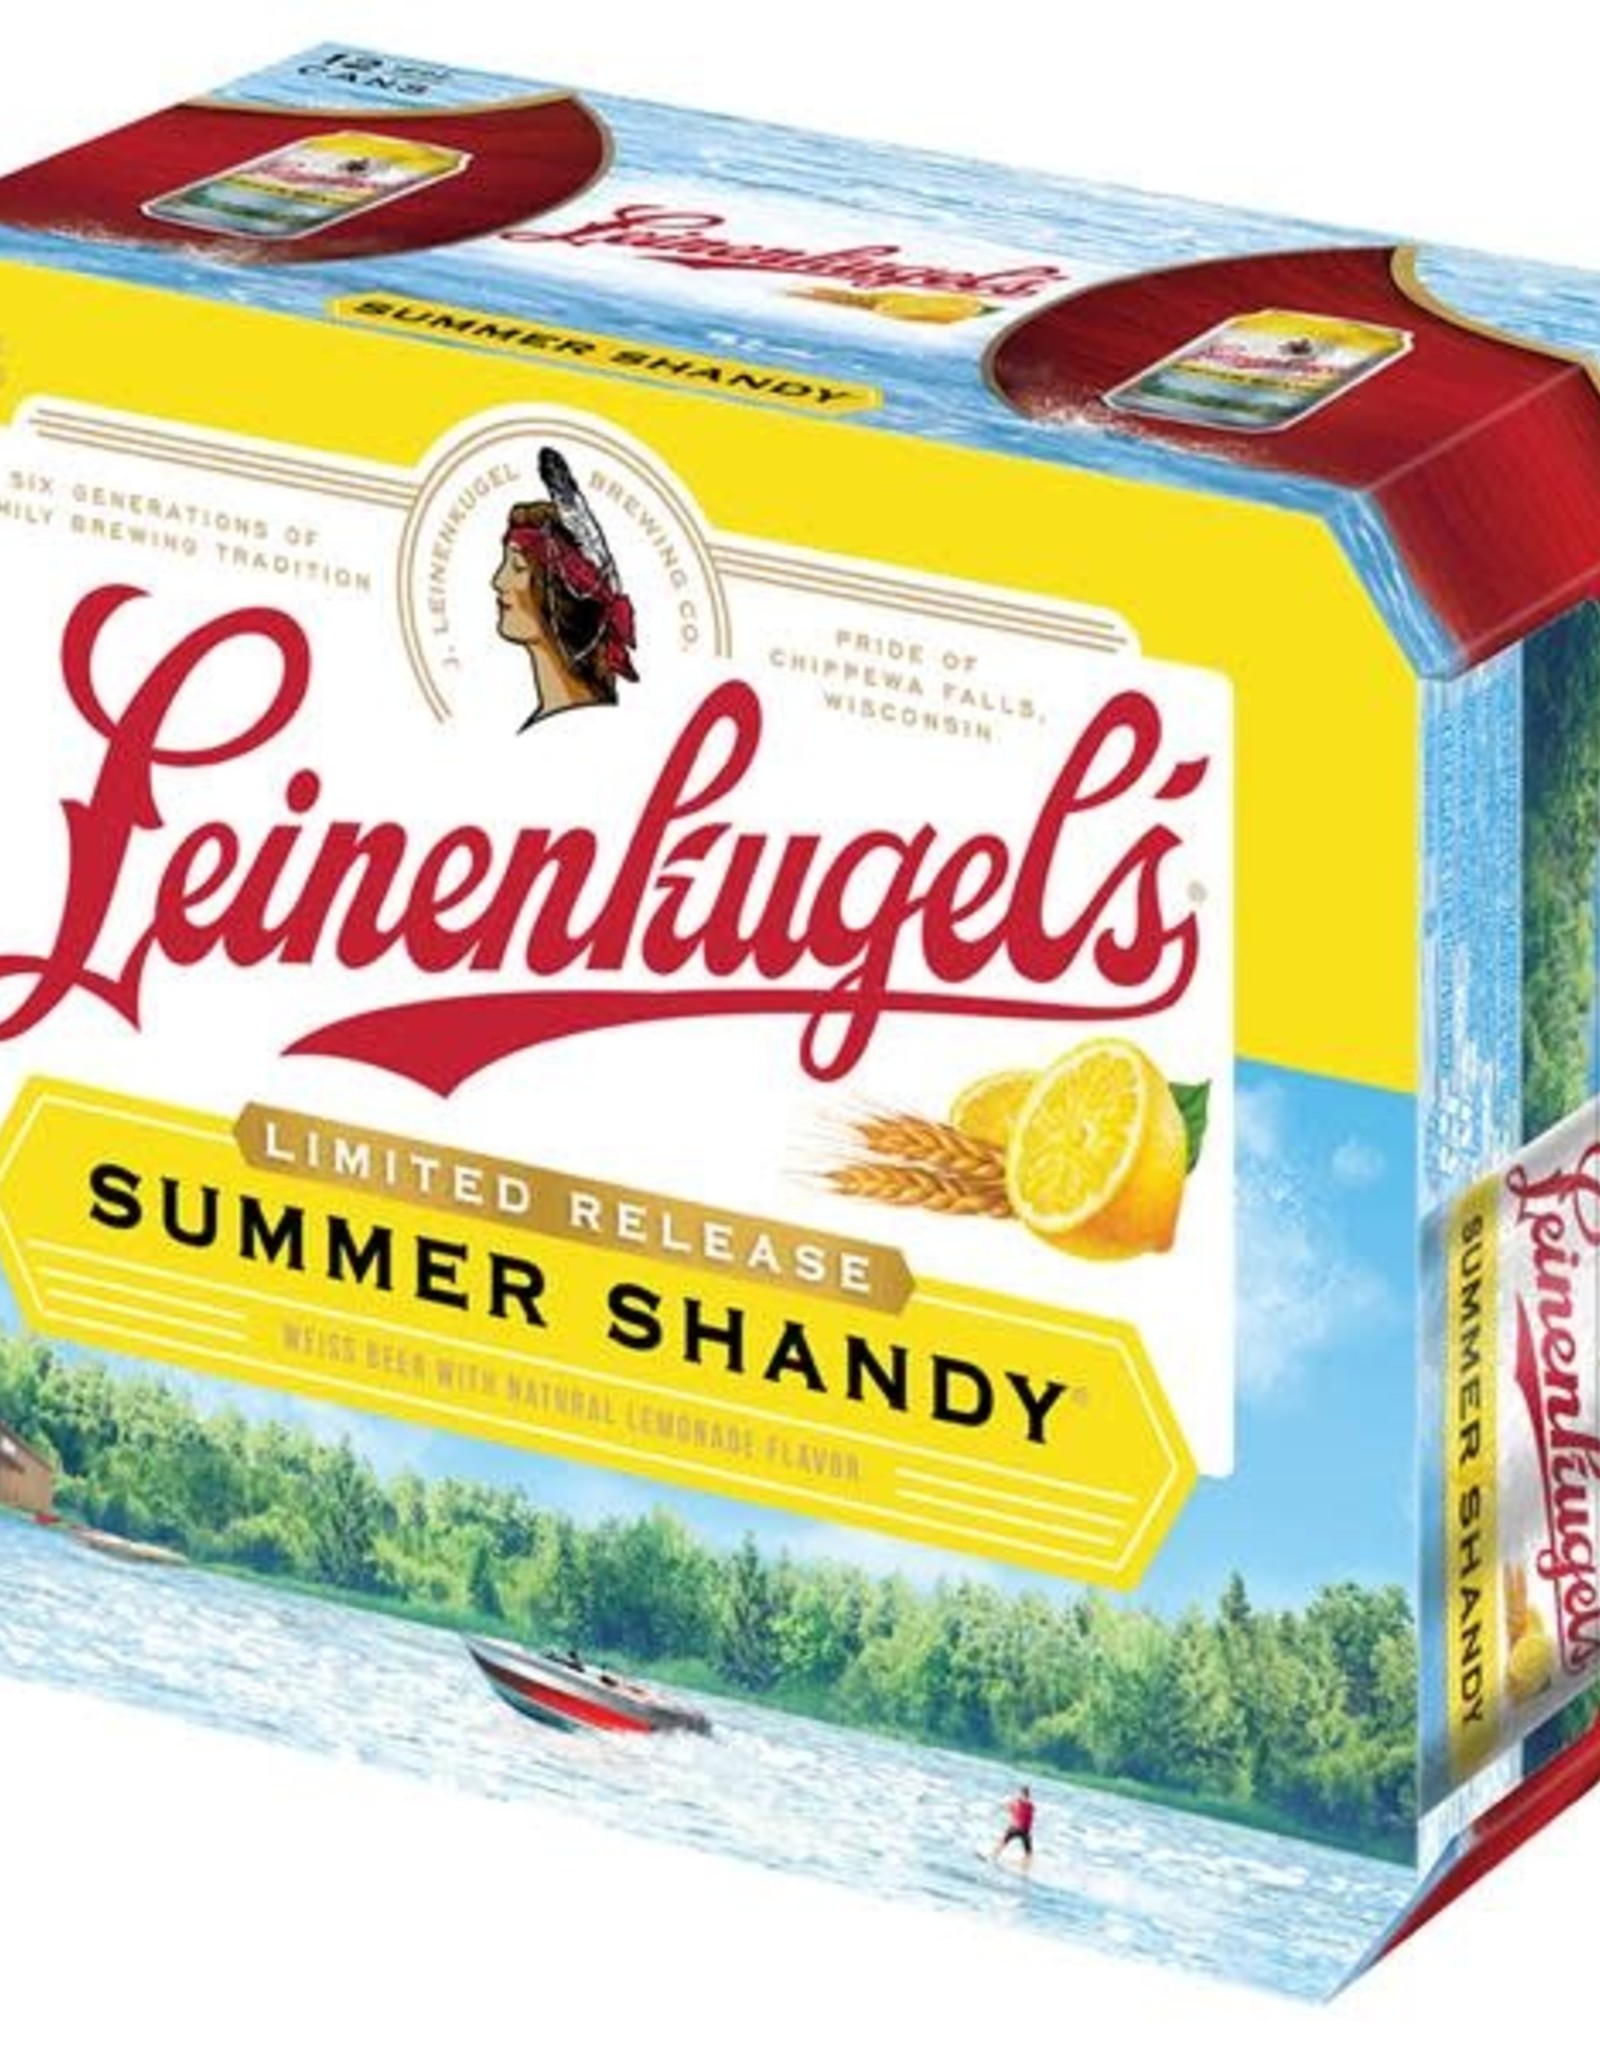 Leinenkugle Summer Shandy Can